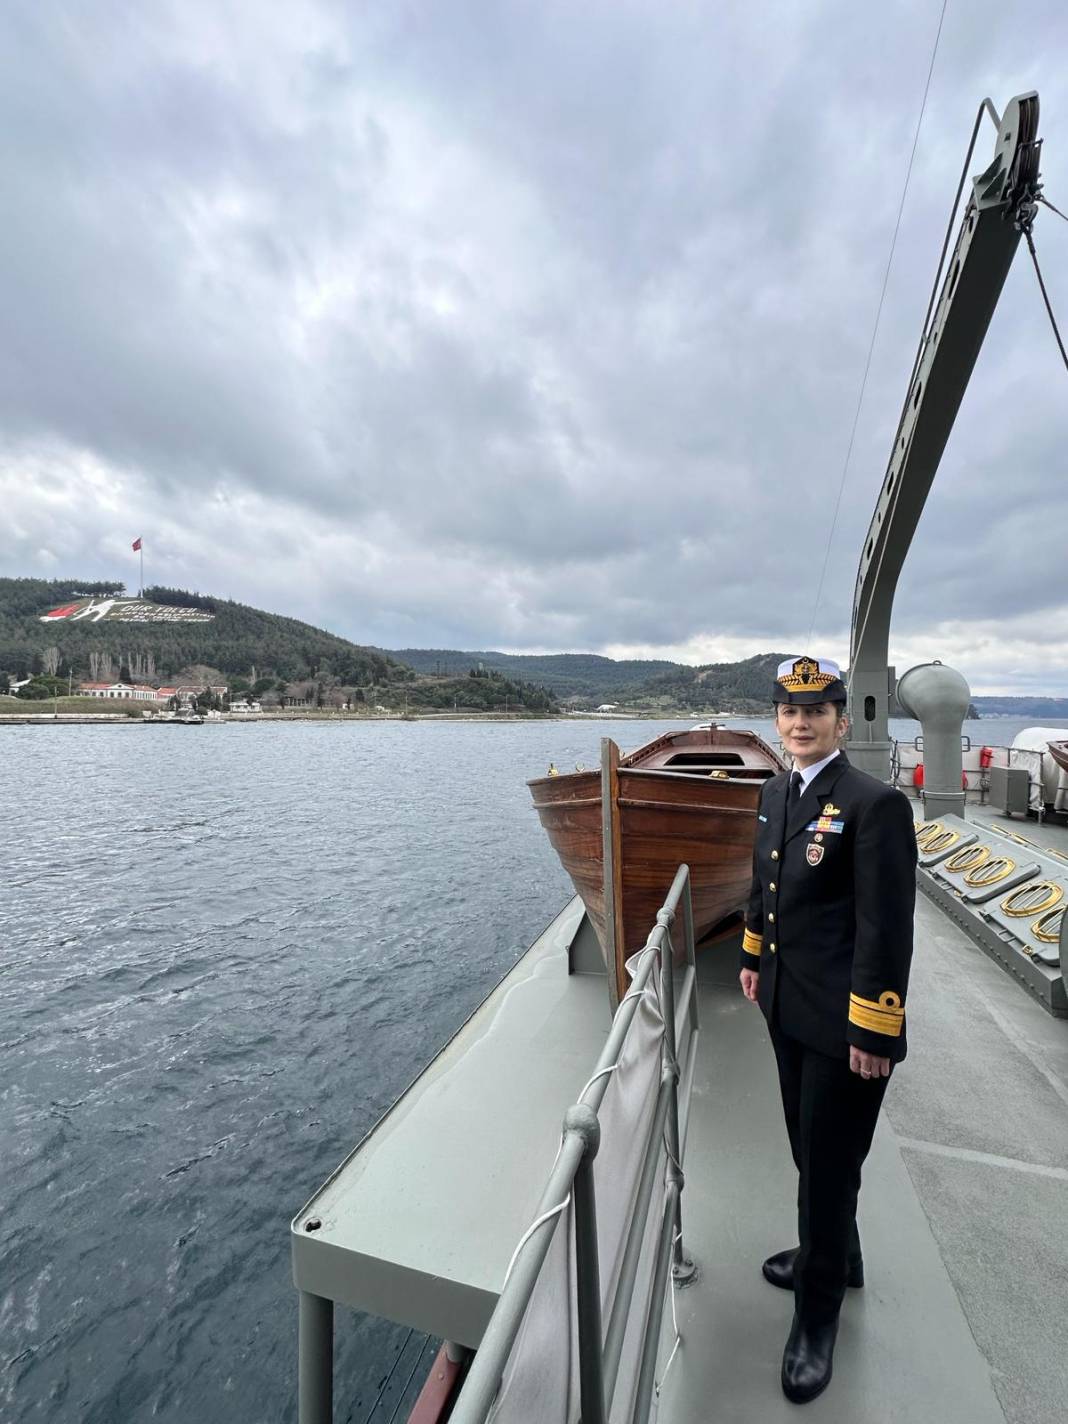 İlk kadın amirali Gökçen Fırat Deniz Harp Okulu öğrencileriyle TCG Nusret'te buluştu 20